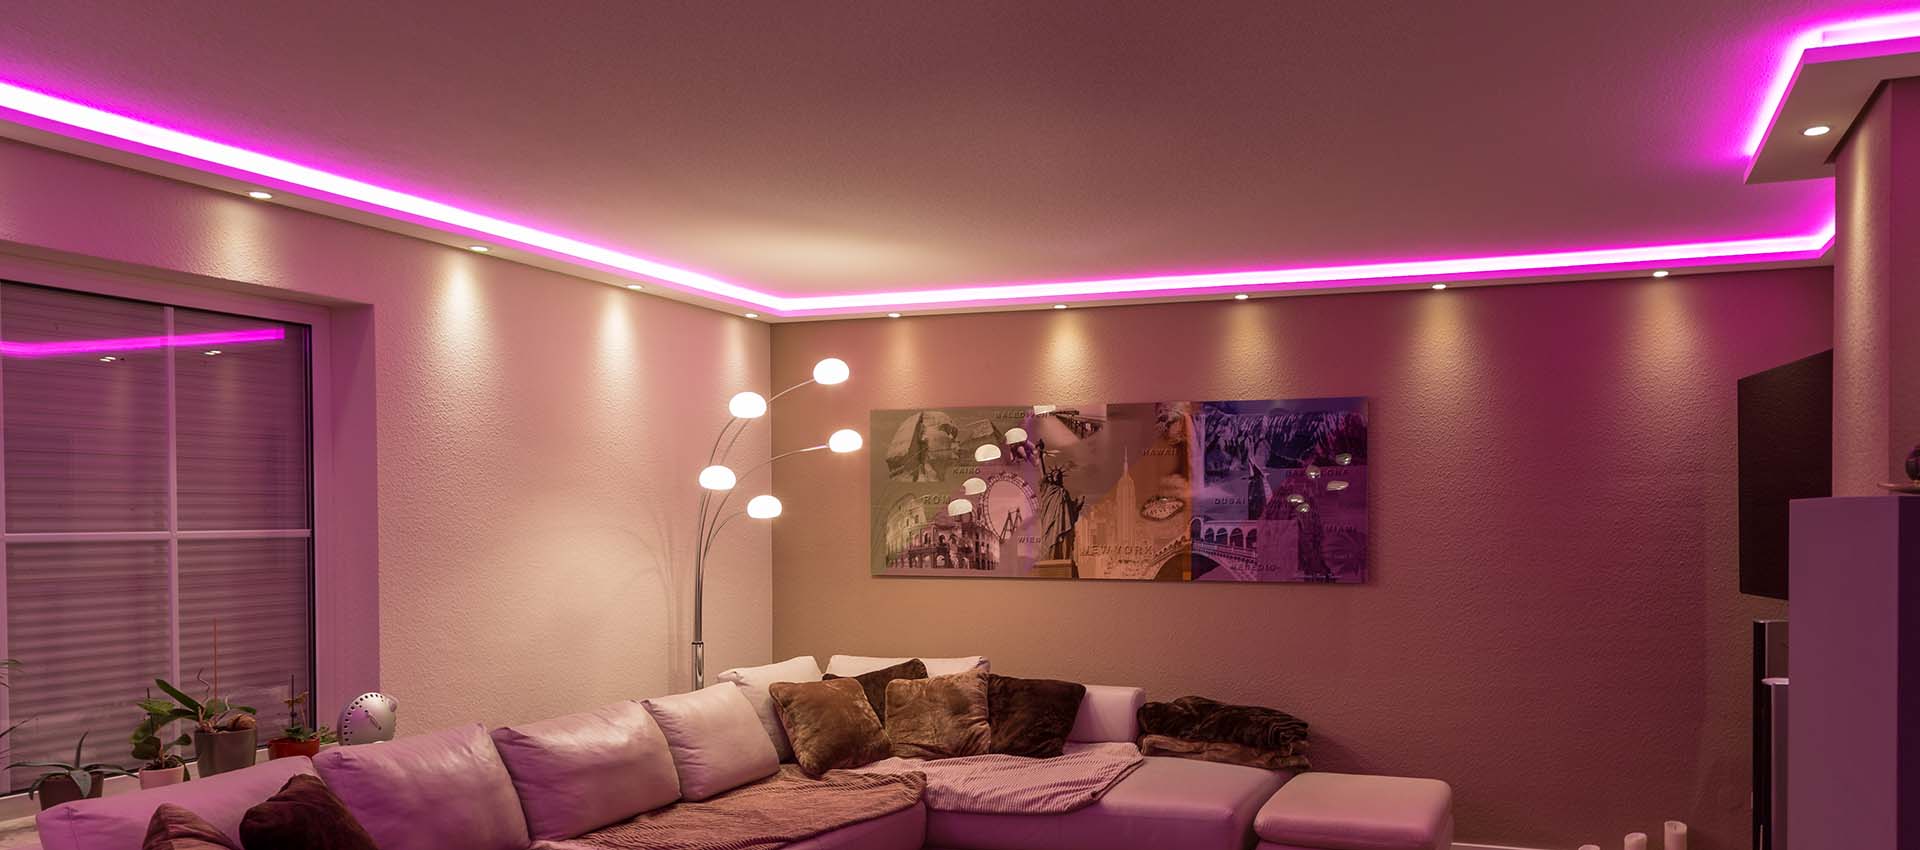 Indirekte LED Beleuchtung Wand und Decke selber bauen | BENDU